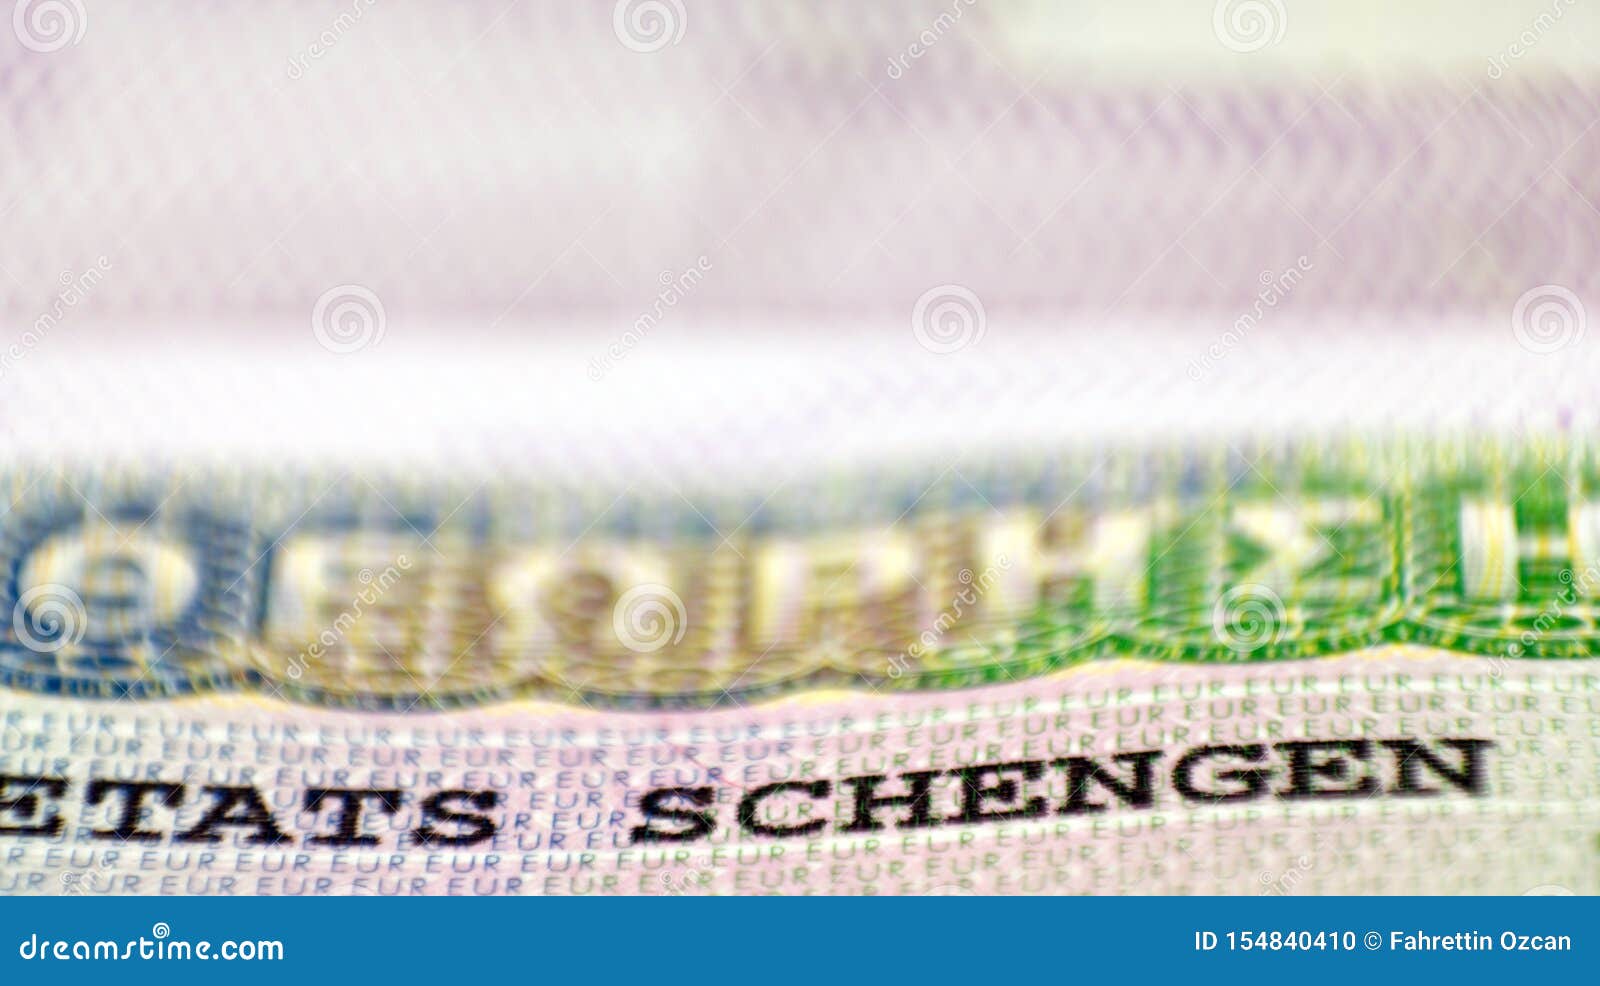 schengen visa in passport.